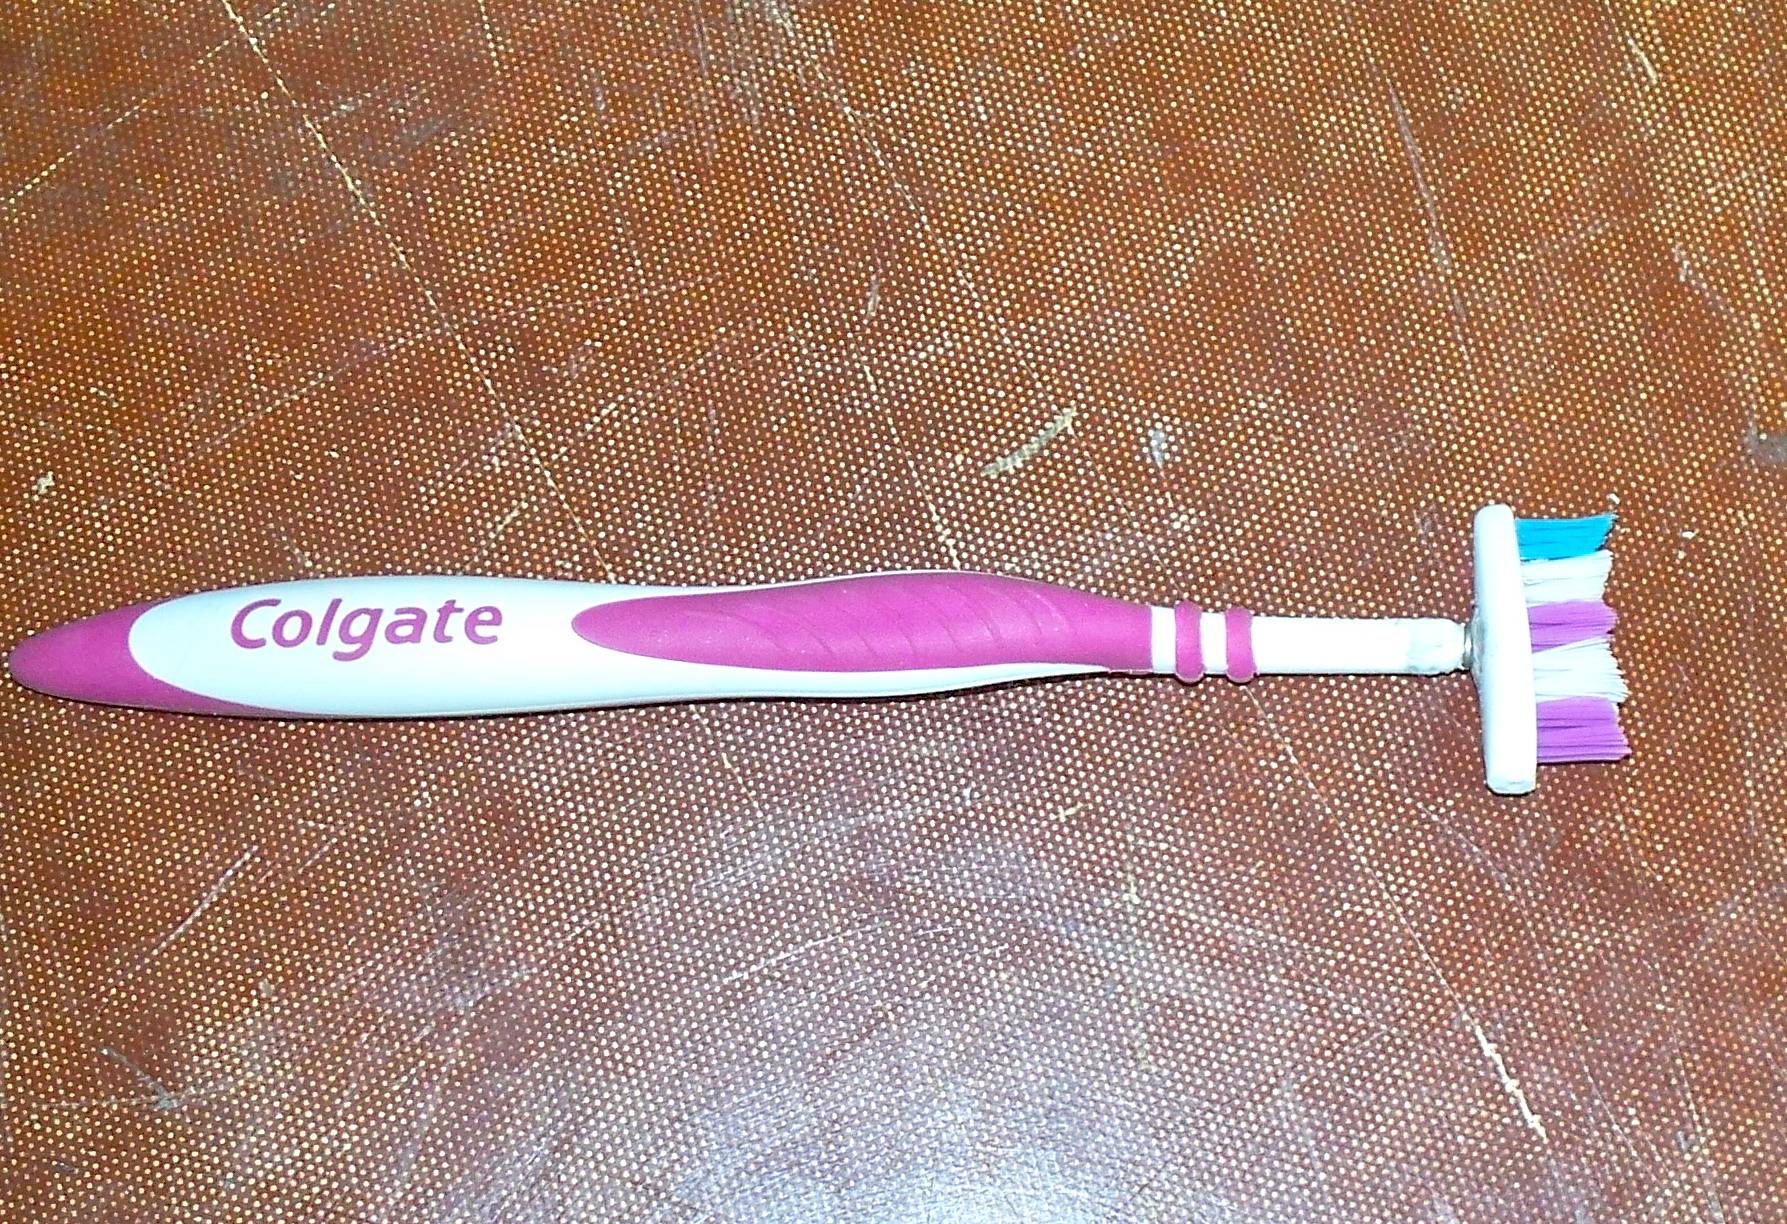 Нестандартные способы использования зубной щетки в быту